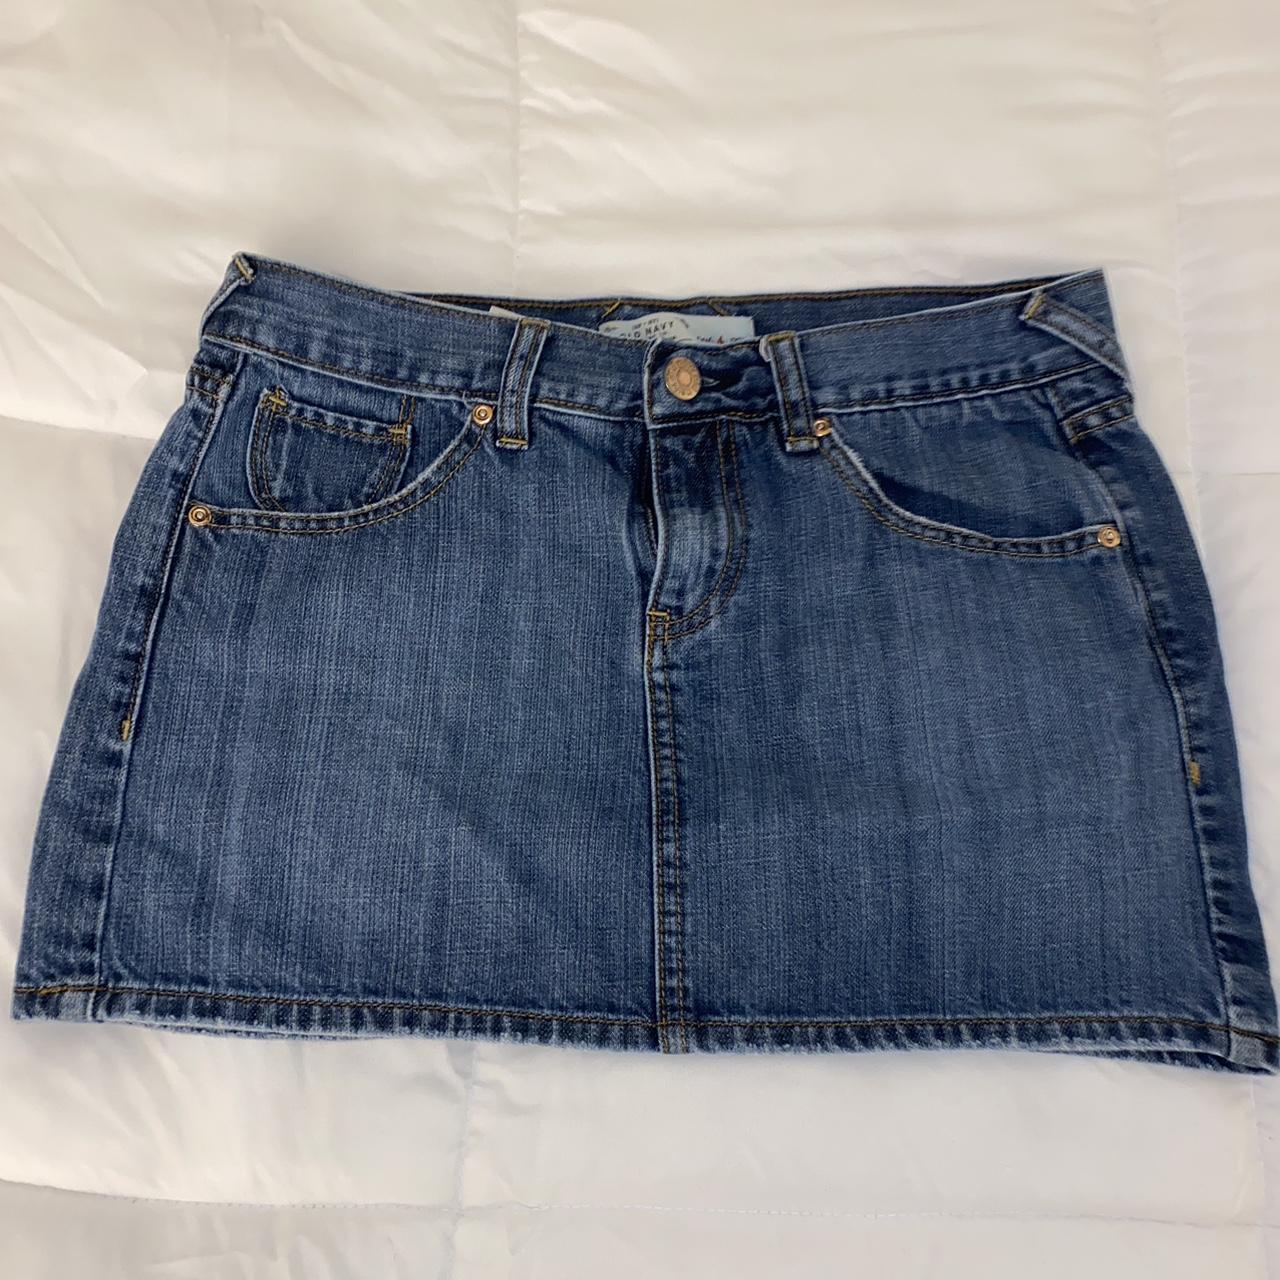 Vintage Old Navy jean skirt Size 4, no flaws or... - Depop